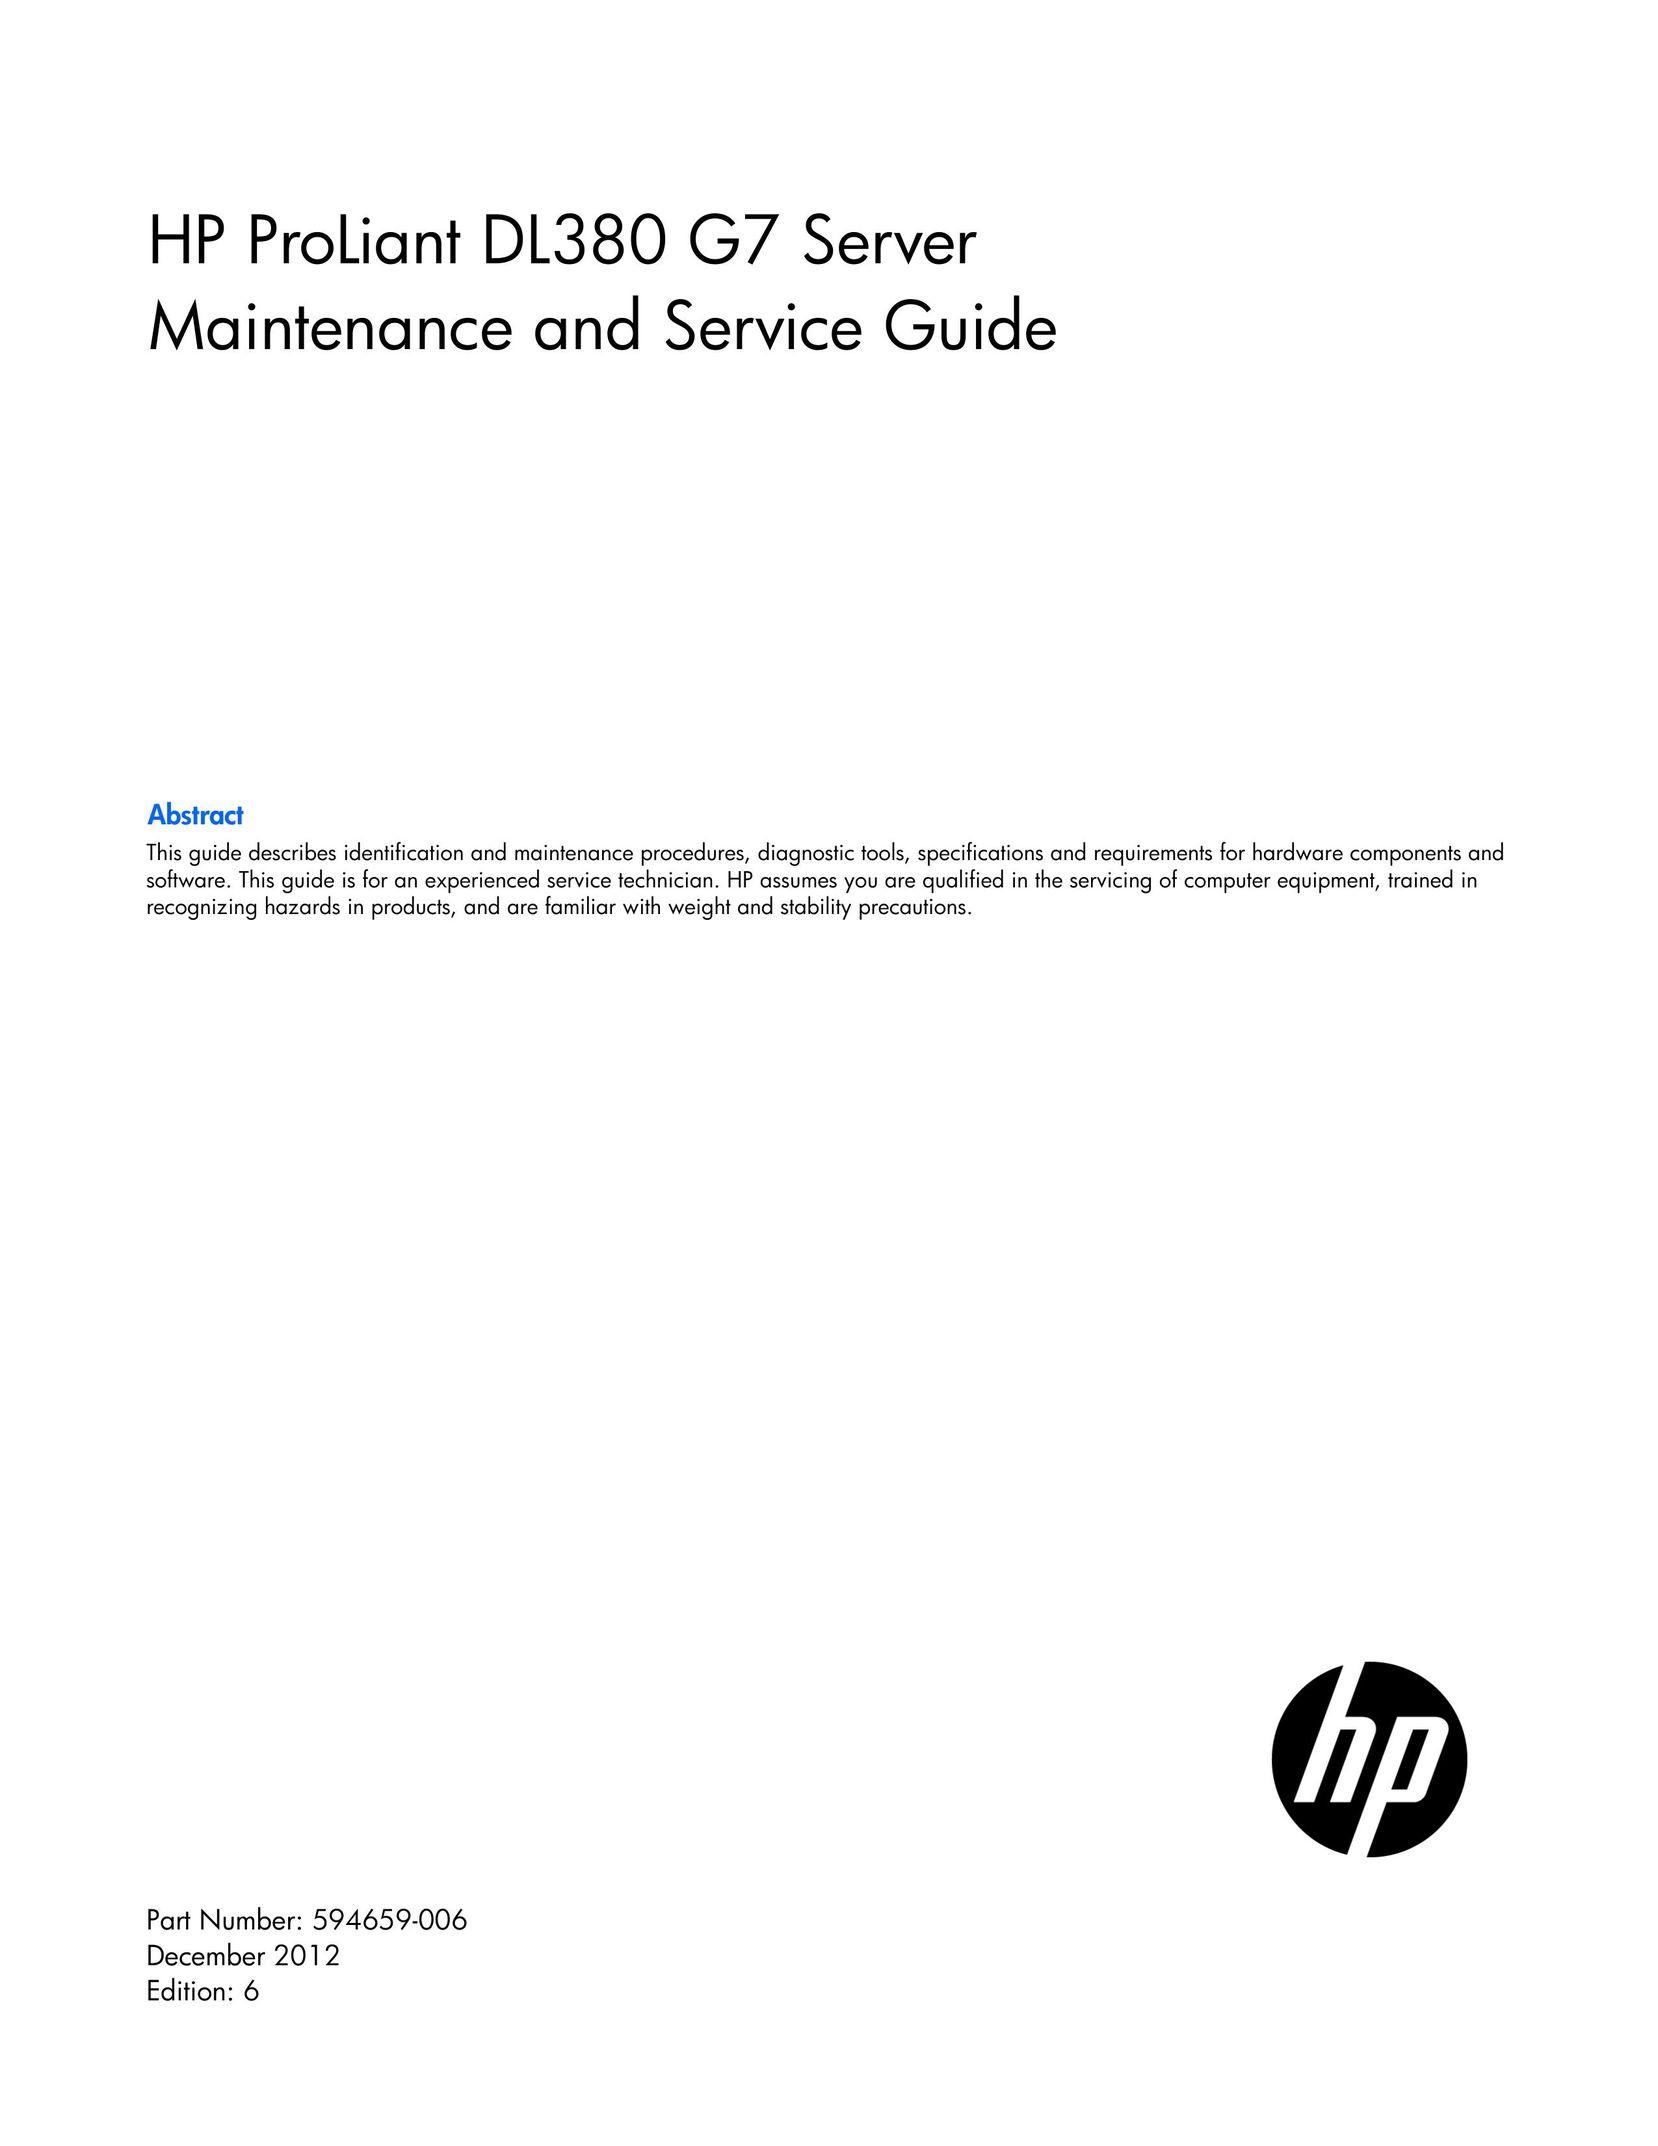 HP (Hewlett-Packard) 633407-001 Server User Manual